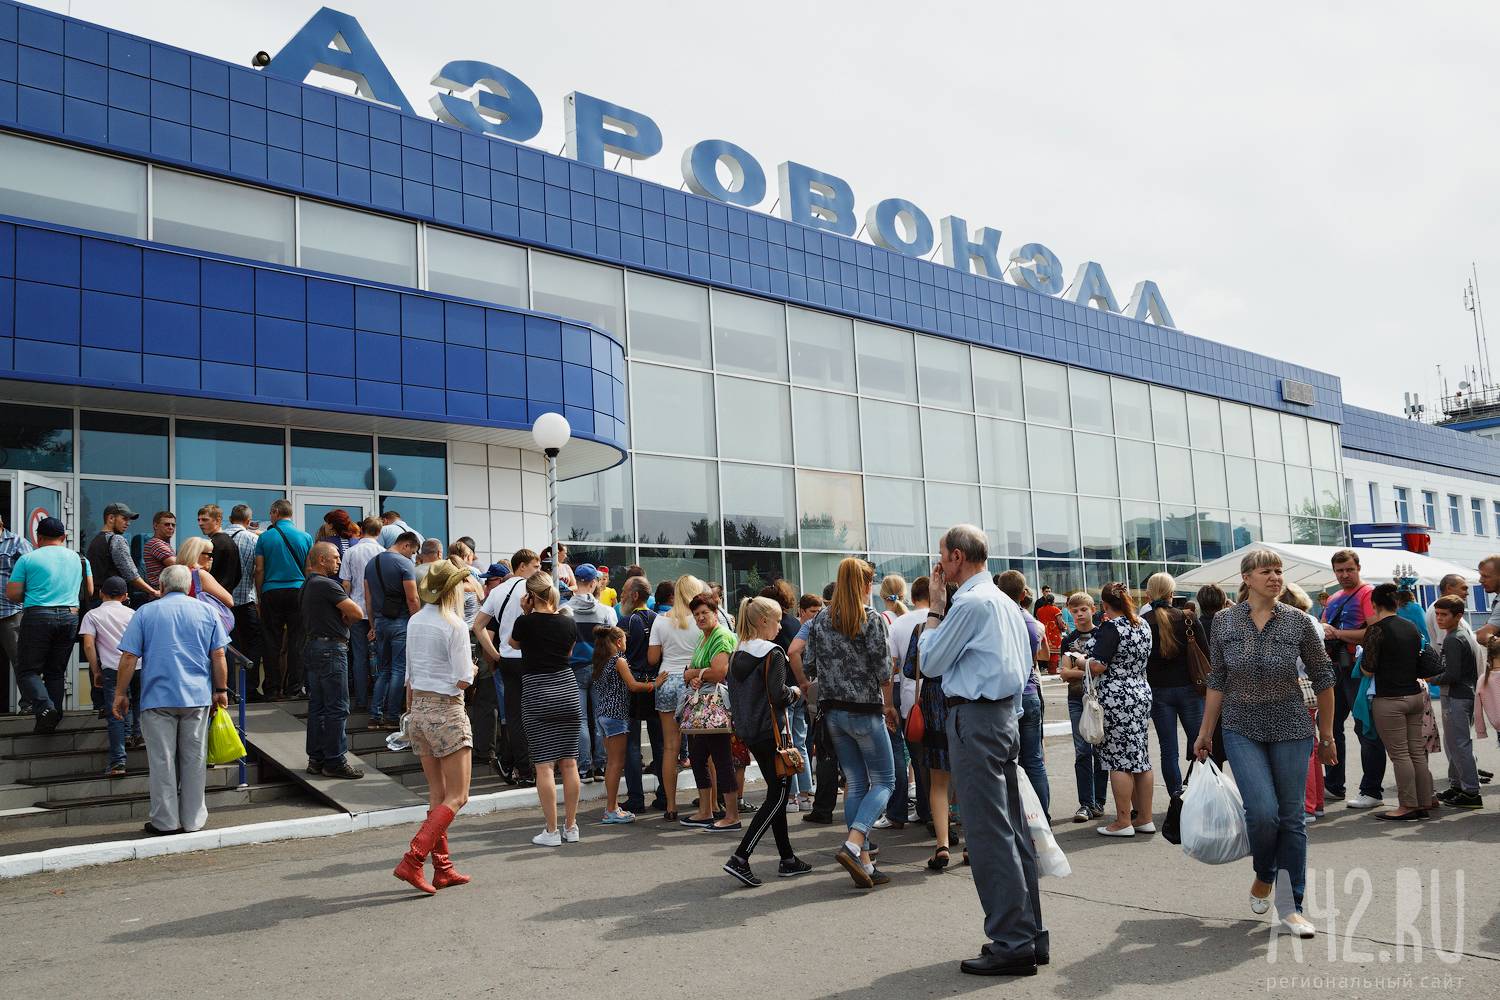 Аэропорт новокузнецк (noz)